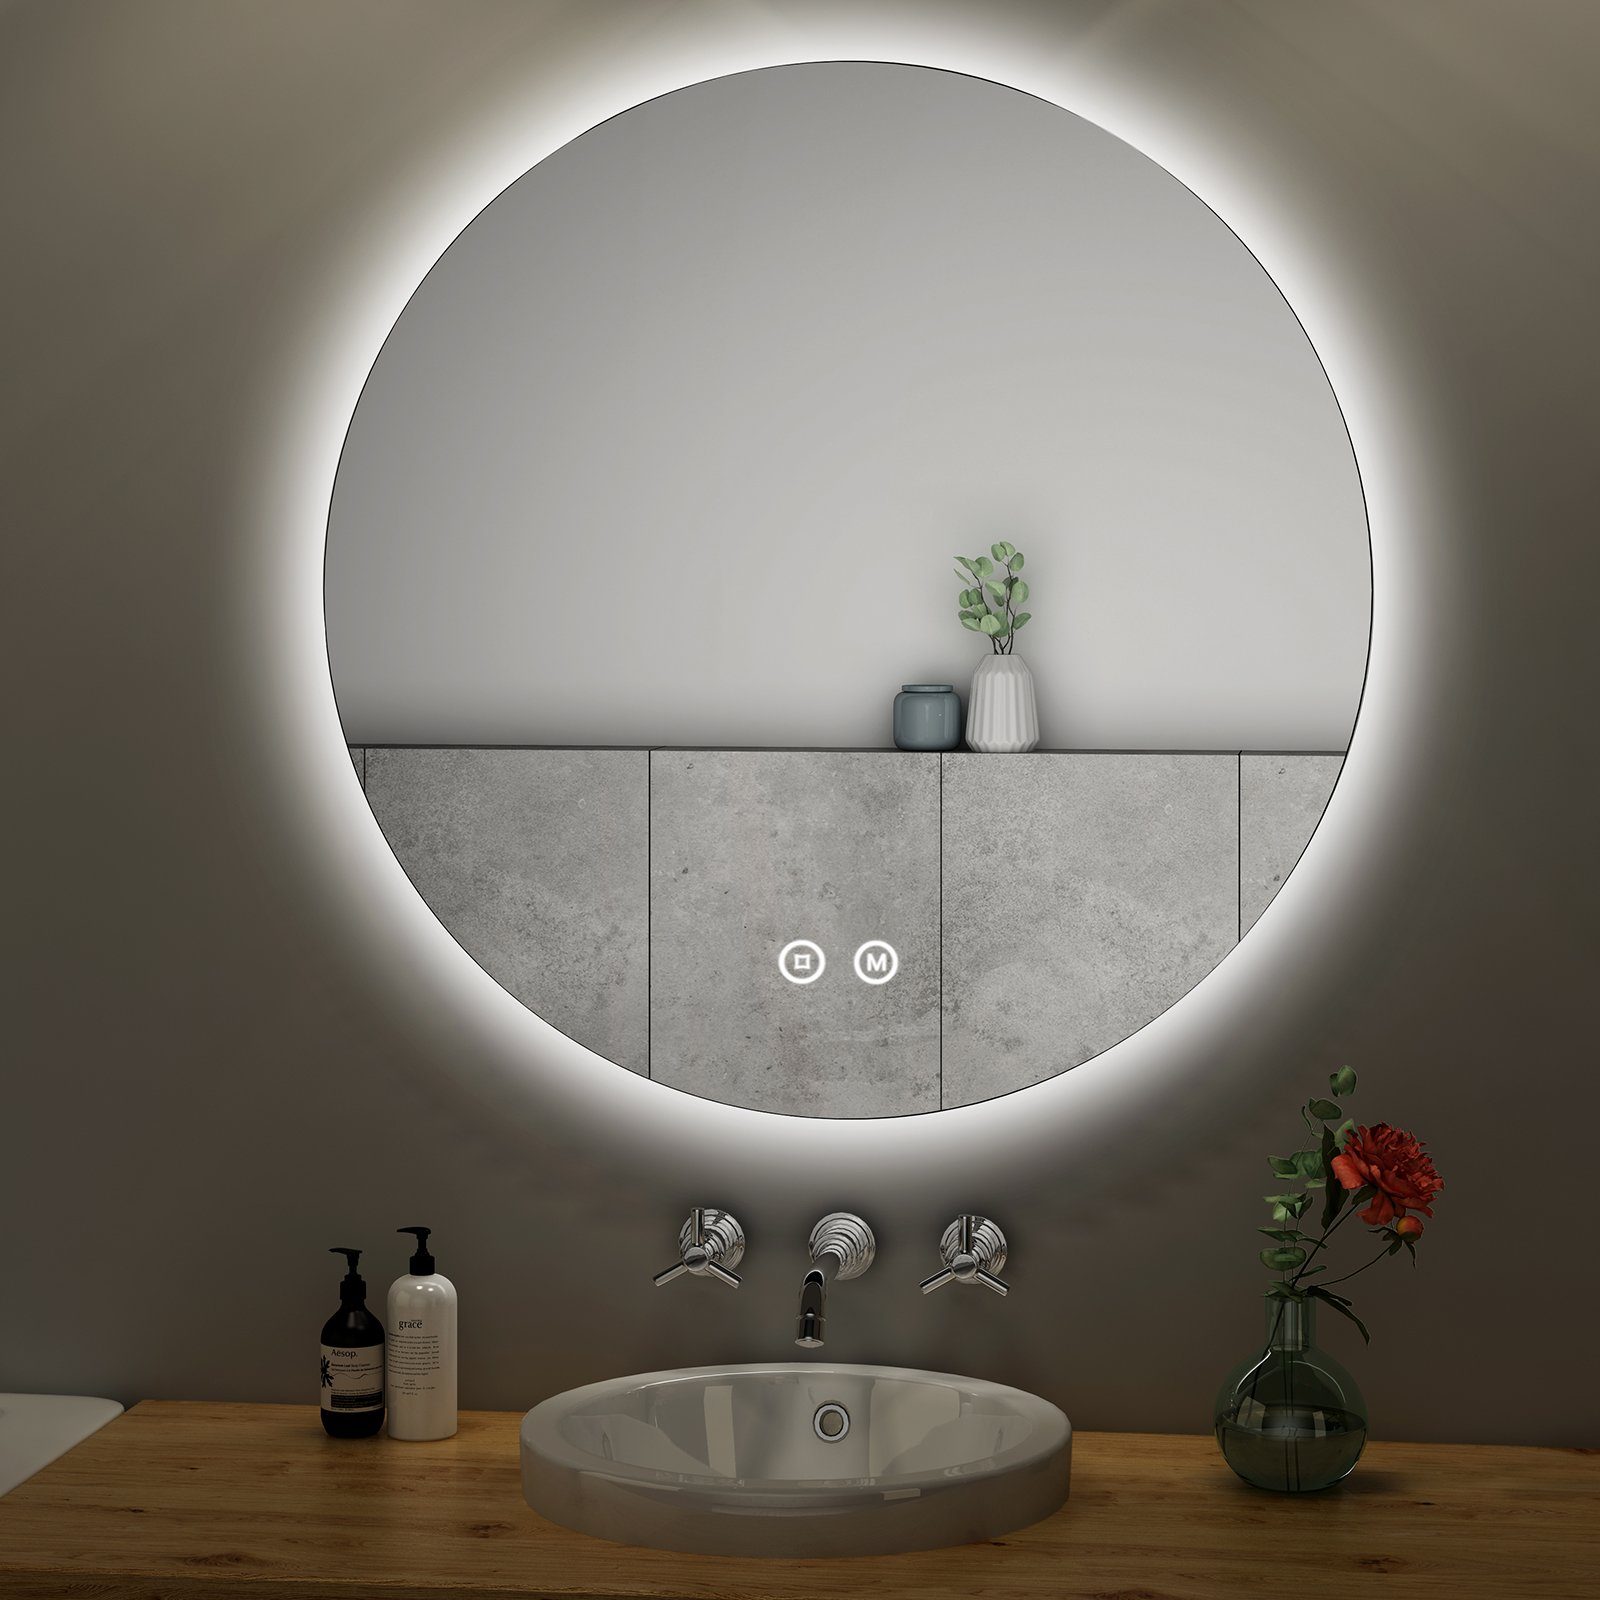 S'AFIELINA Badspiegel LED Badezimmerspiegel mit Beleuchtung 3 Lichtfarbe  Lichtspiegel, 80cm,Dimmbar,3 Lichtfarben,Memory-Funktion,Energiesparend